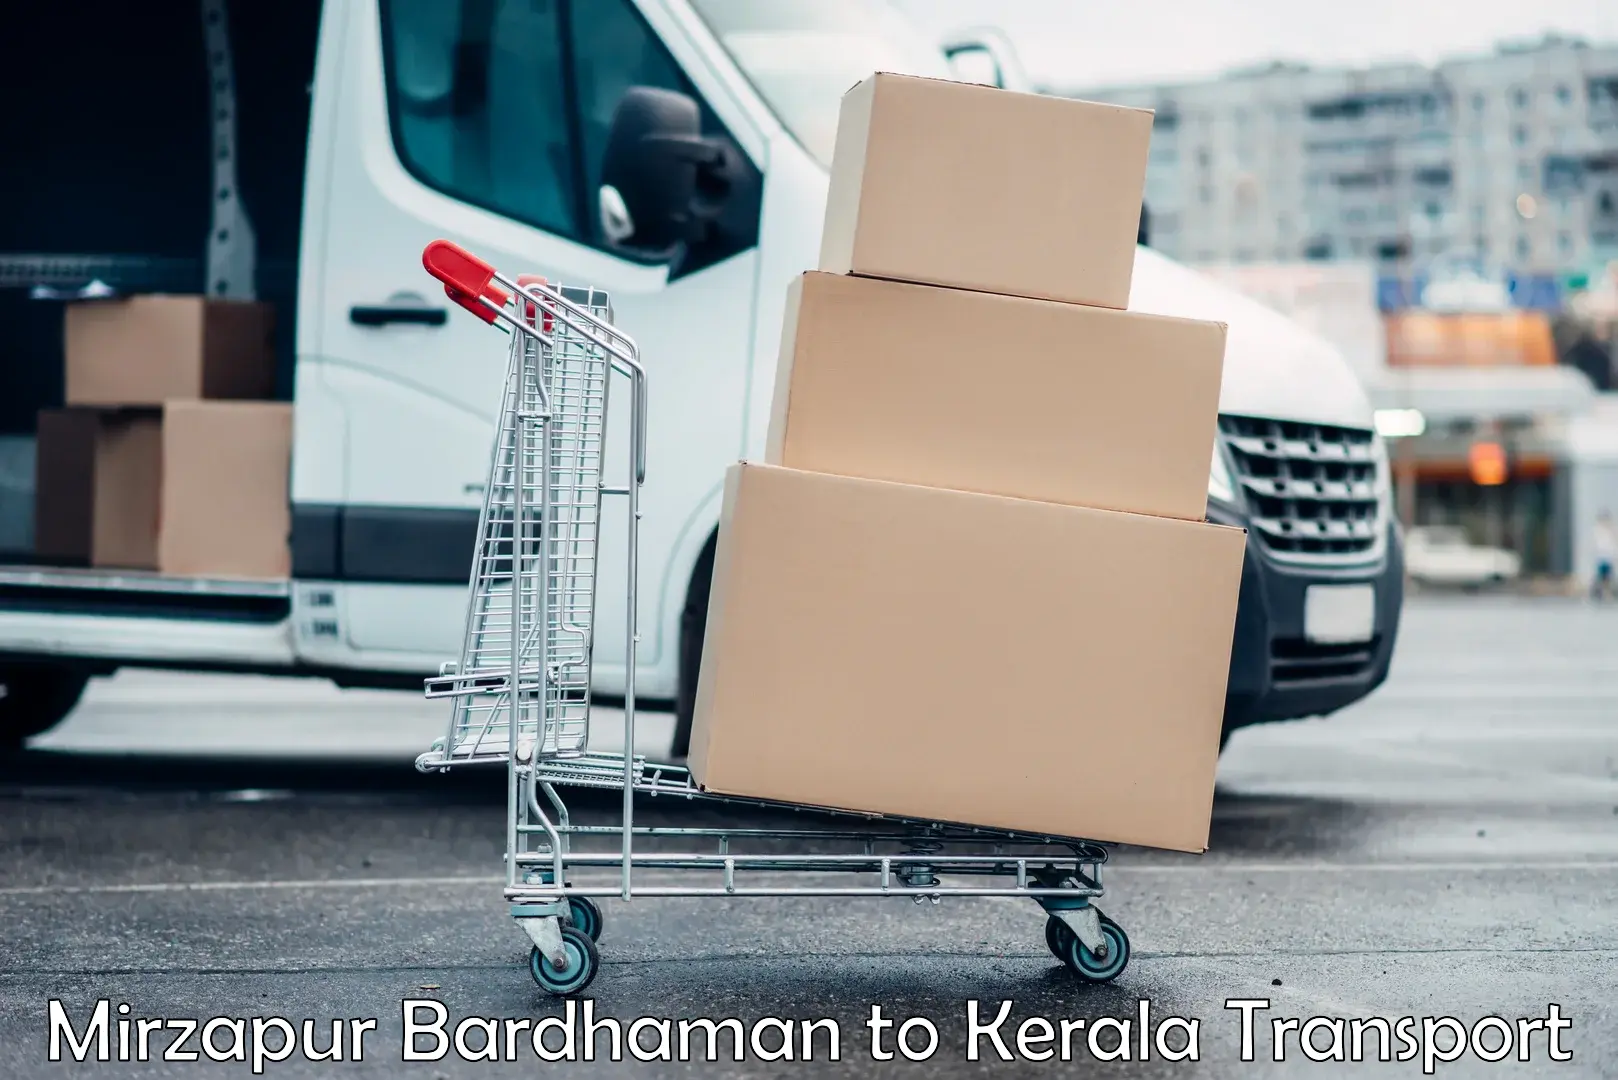 Transport in sharing Mirzapur Bardhaman to Kerala